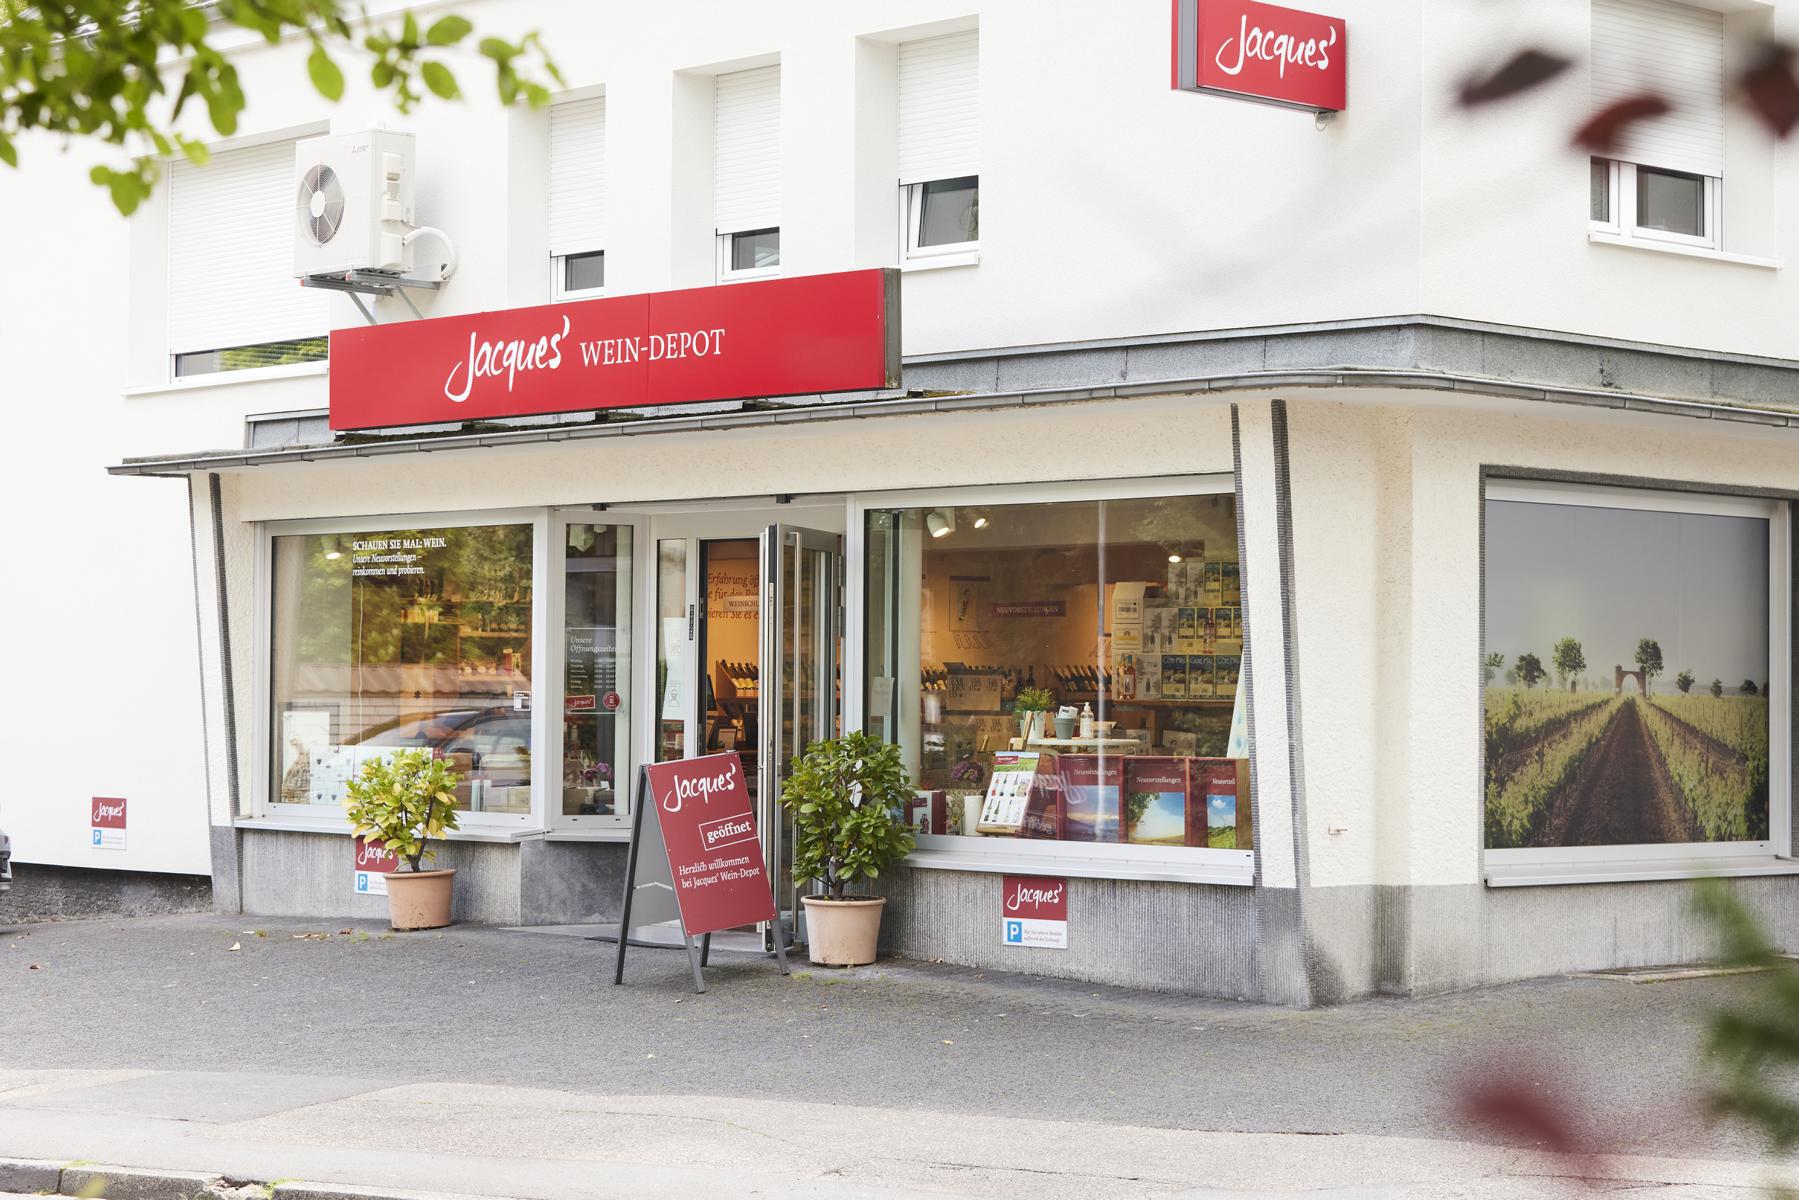 Jacques’ Wein-Depot Bergisch Gladbach, Hebborner Straße 129 in Bergisch Gladbach